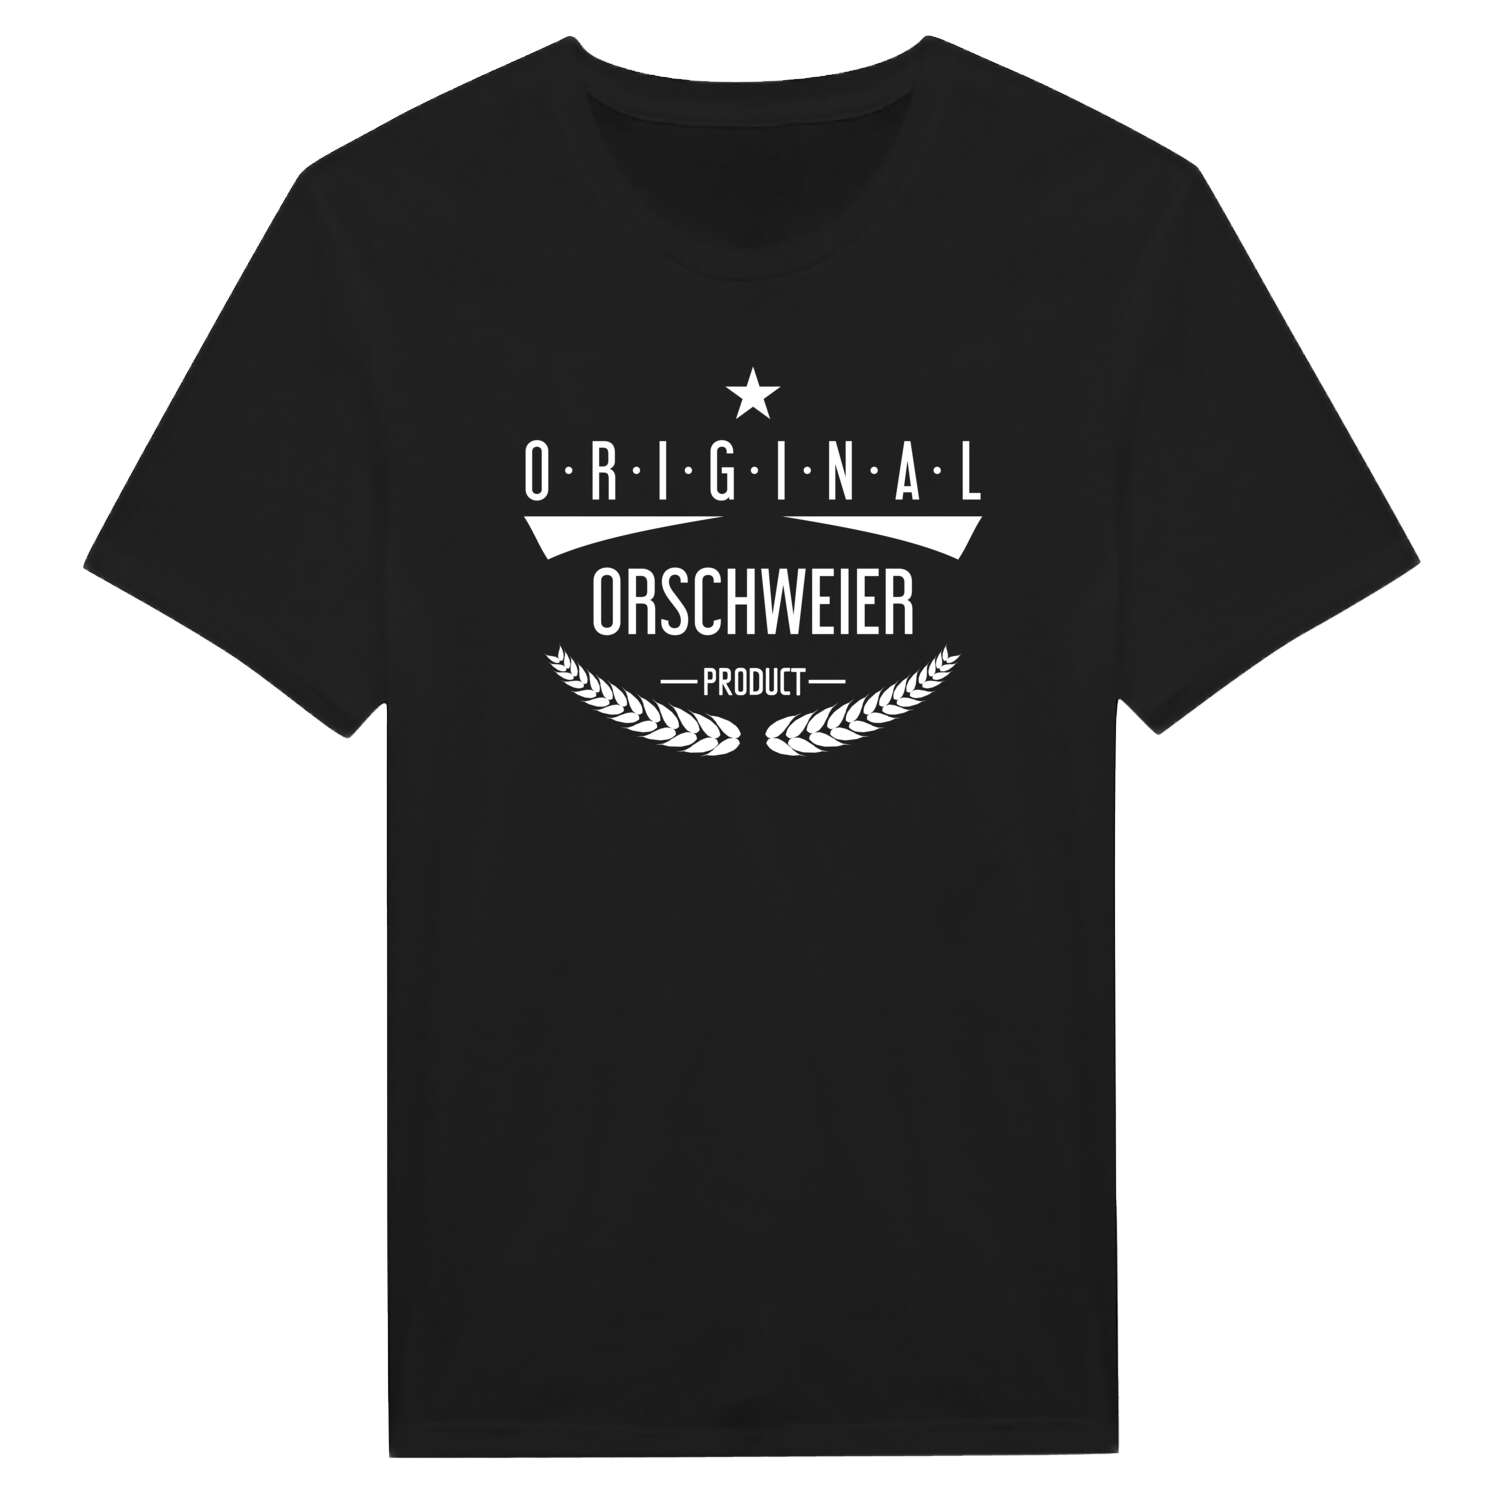 Orschweier T-Shirt »Original Product«